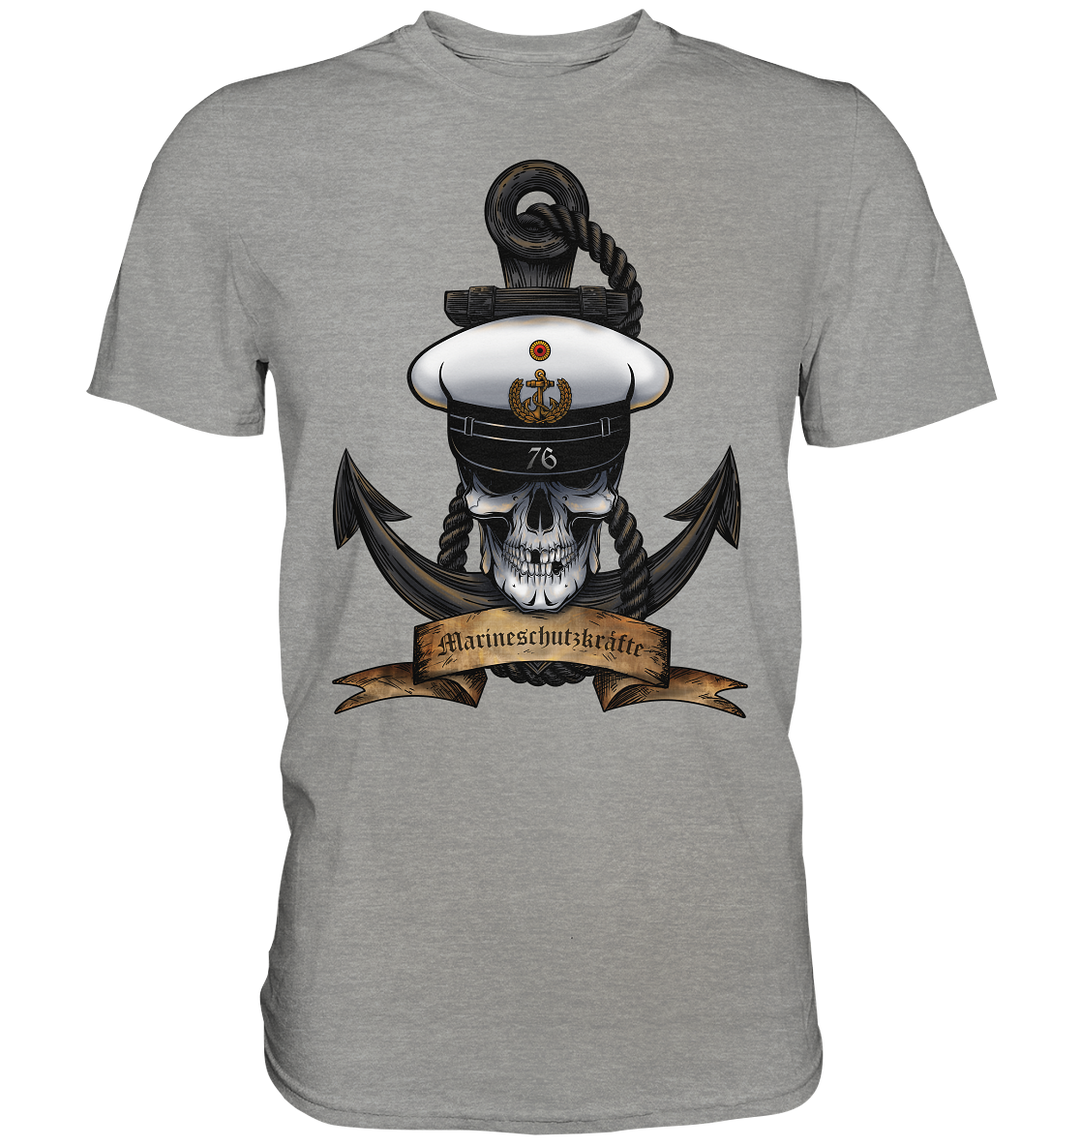 "Marine 76 - Marineschutzkräfte" - Premium Shirt